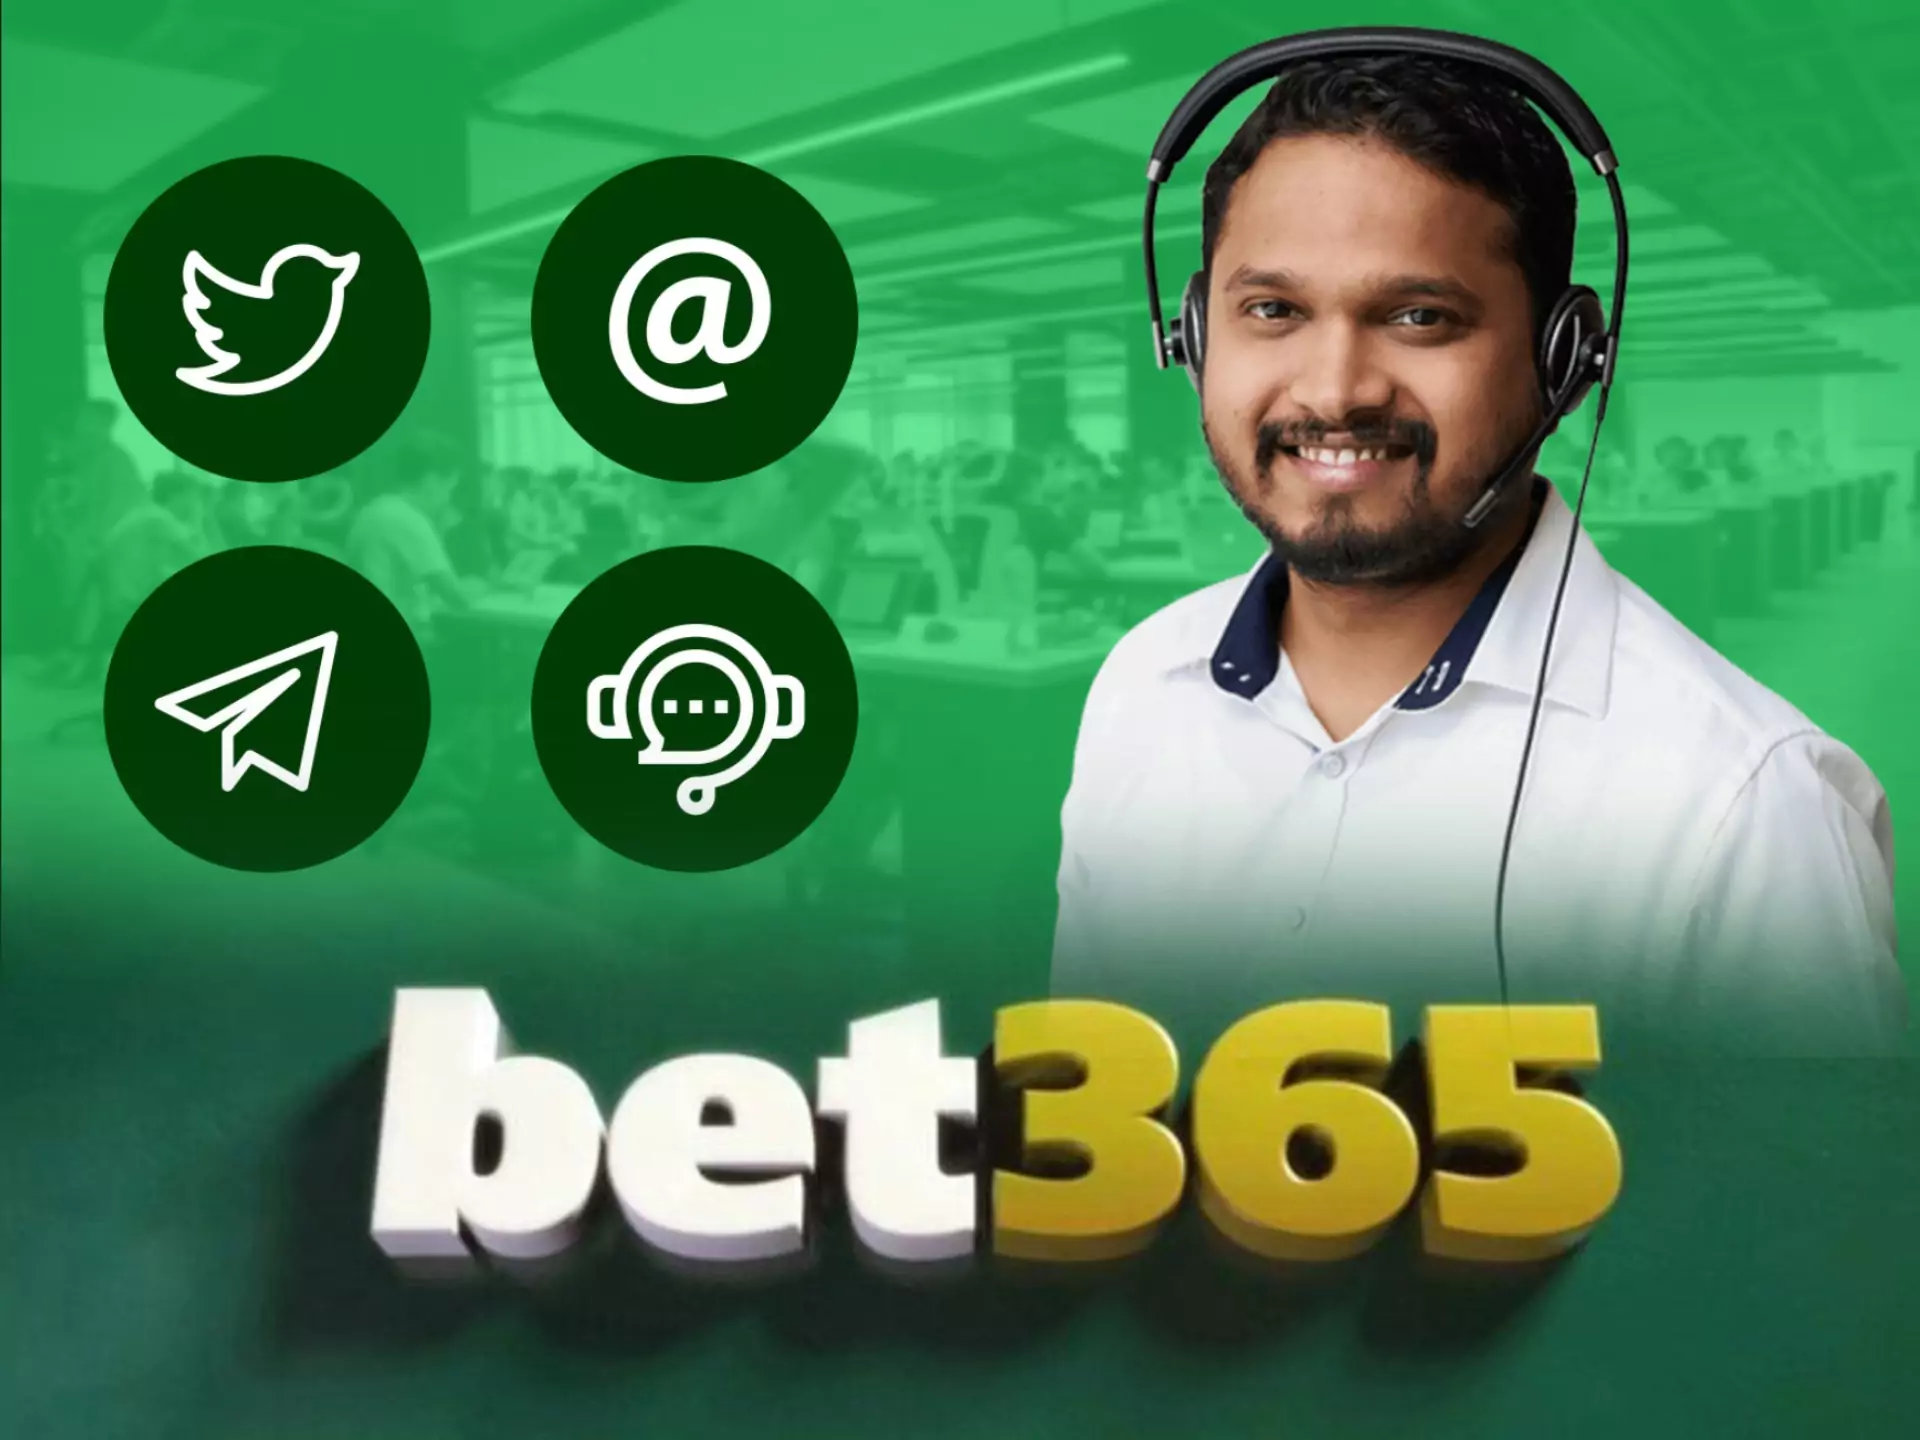 आप संपर्क कर सकते हैं bet365 ग्राहक का समर्थन करने के लिए कुछ मदद मिल अगर आप की जरूरत है यह।